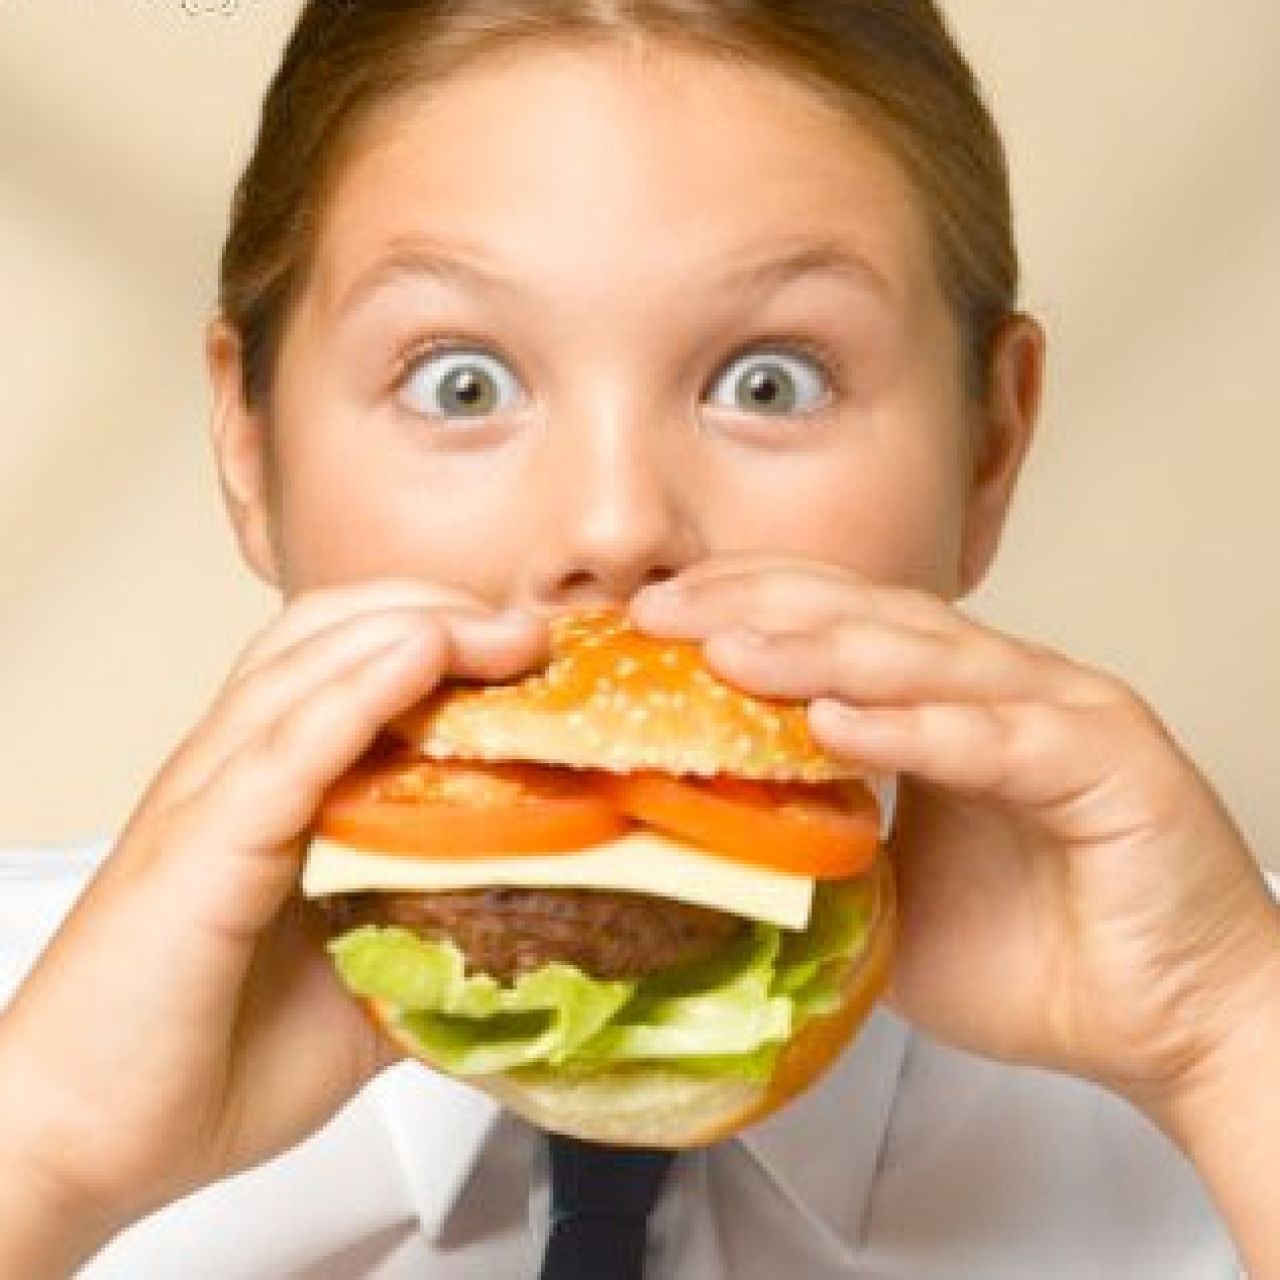 Złe nawyki żywieniowe w dzieciństwie a otyłość